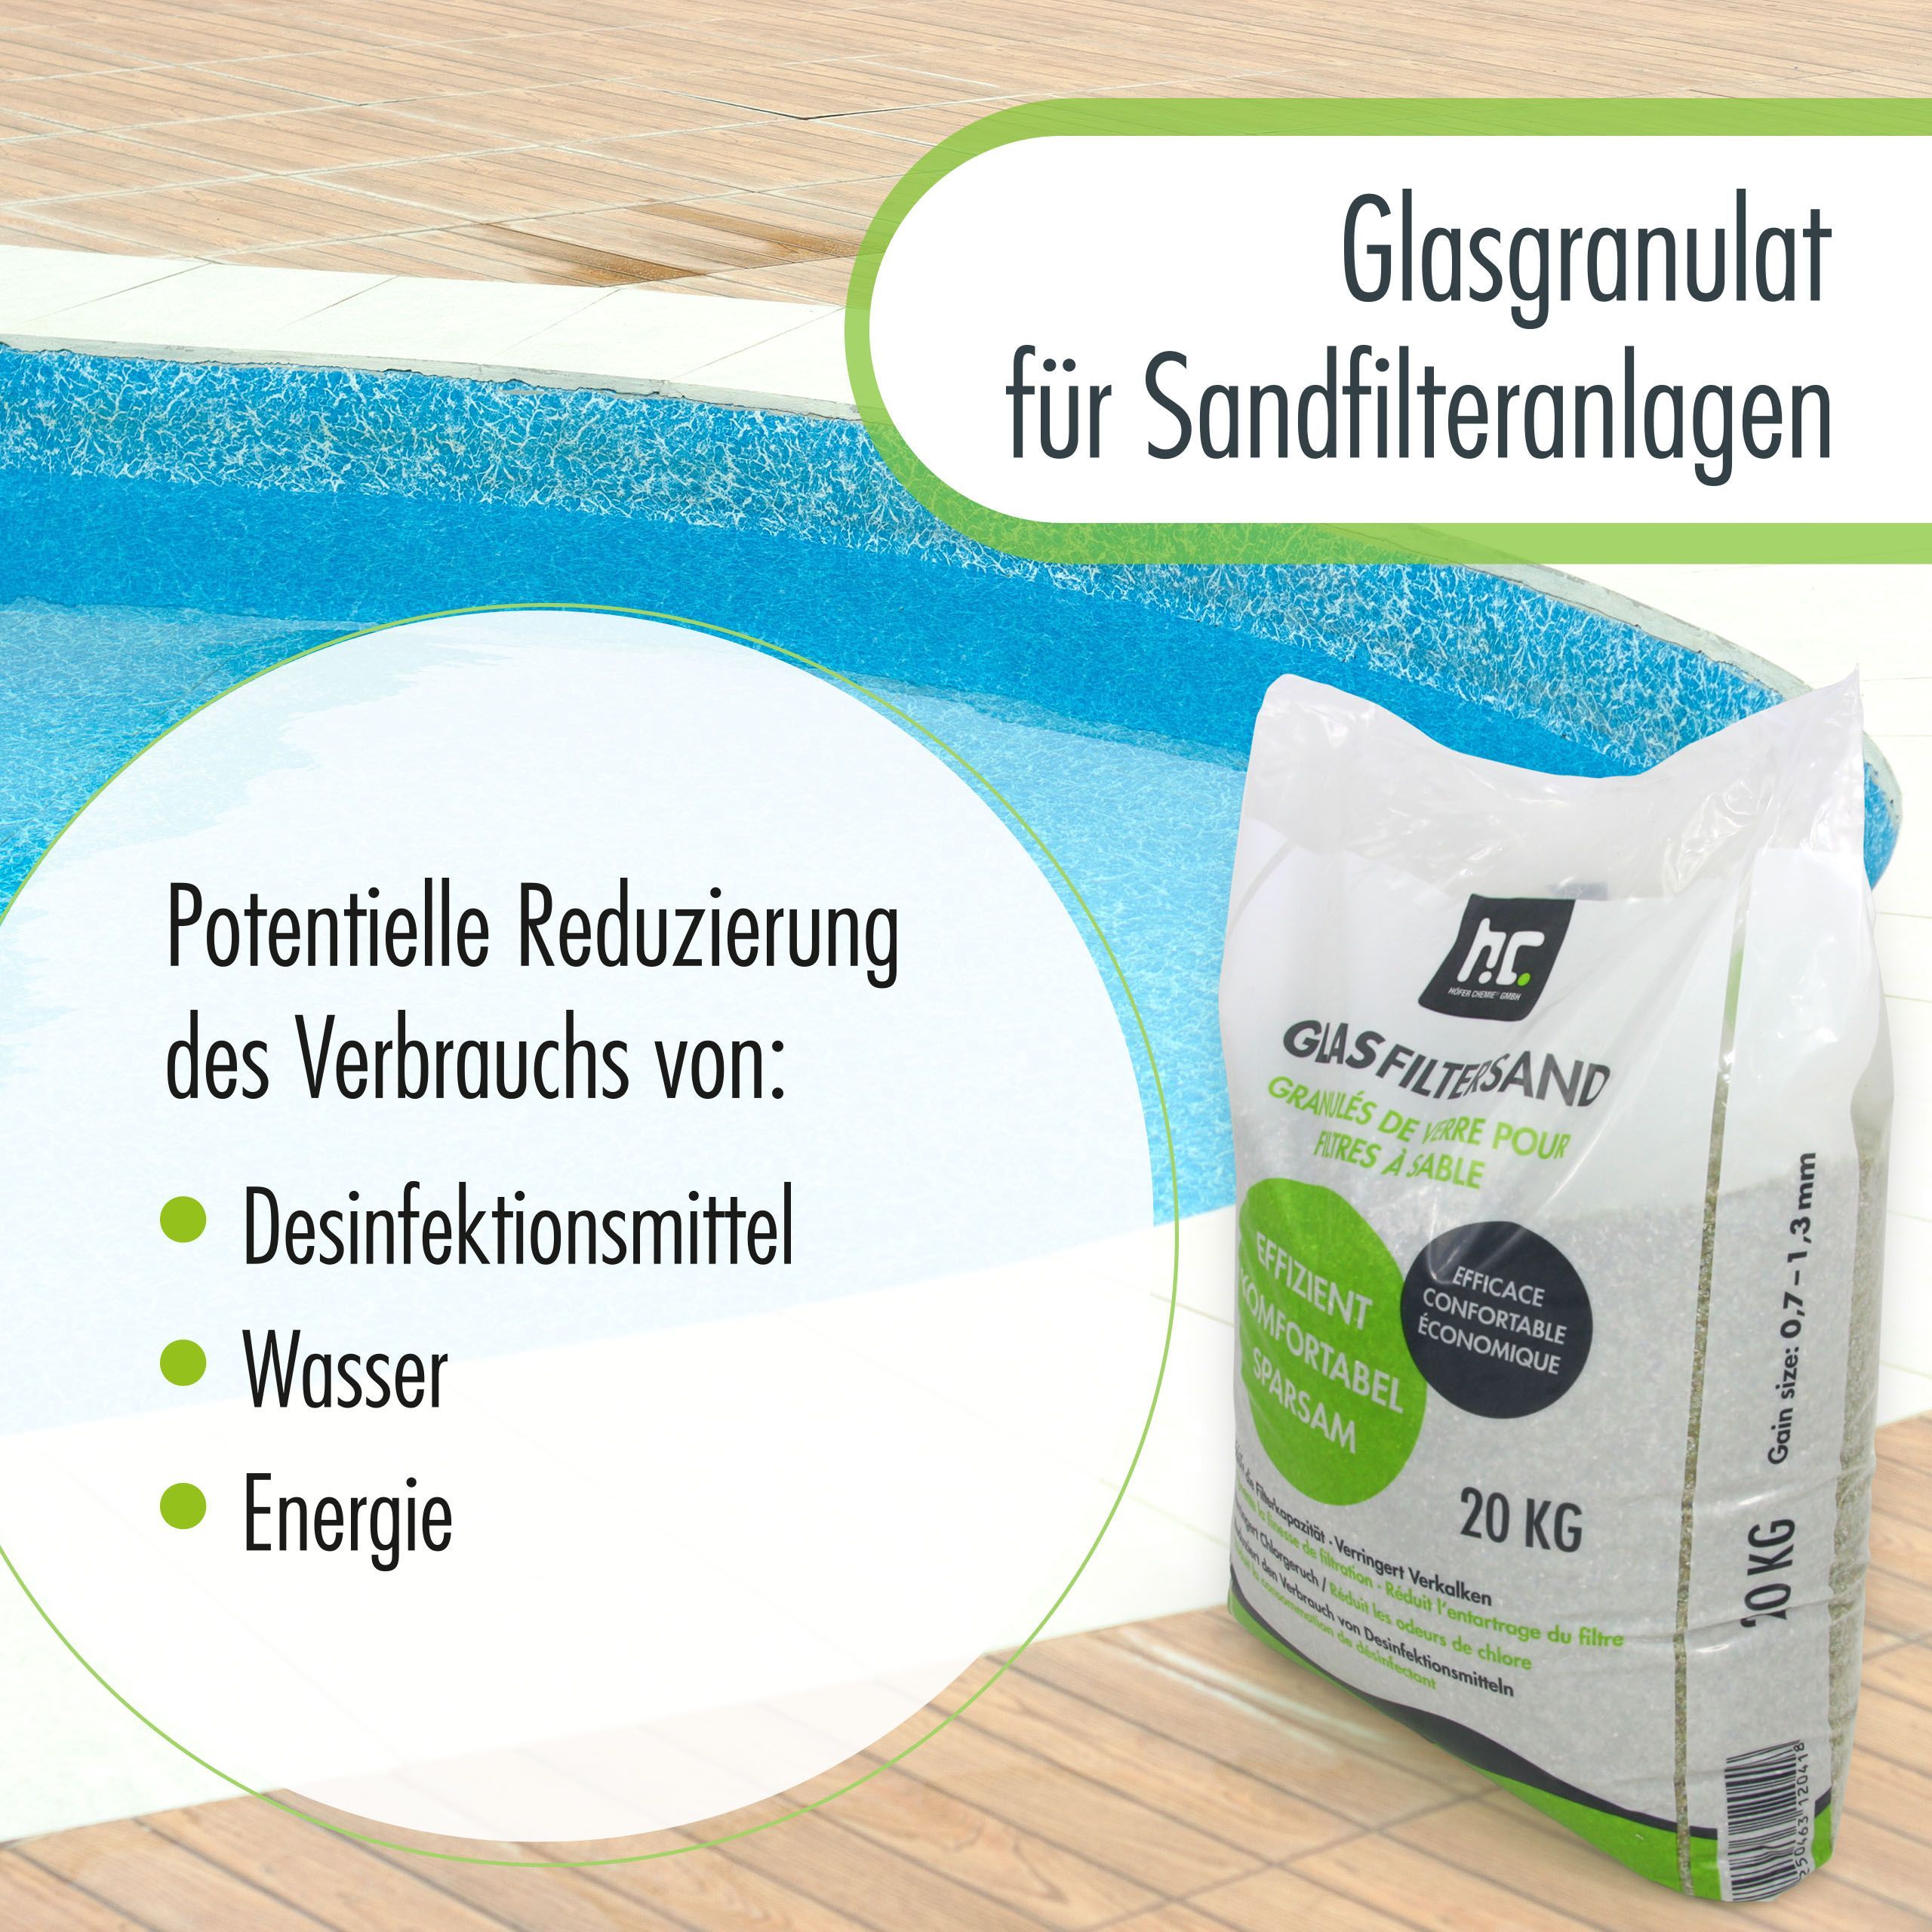 20 kg Spezial Glasgranulat für Sandfilteranlagen 0,7 - 1,3 mm Körnung